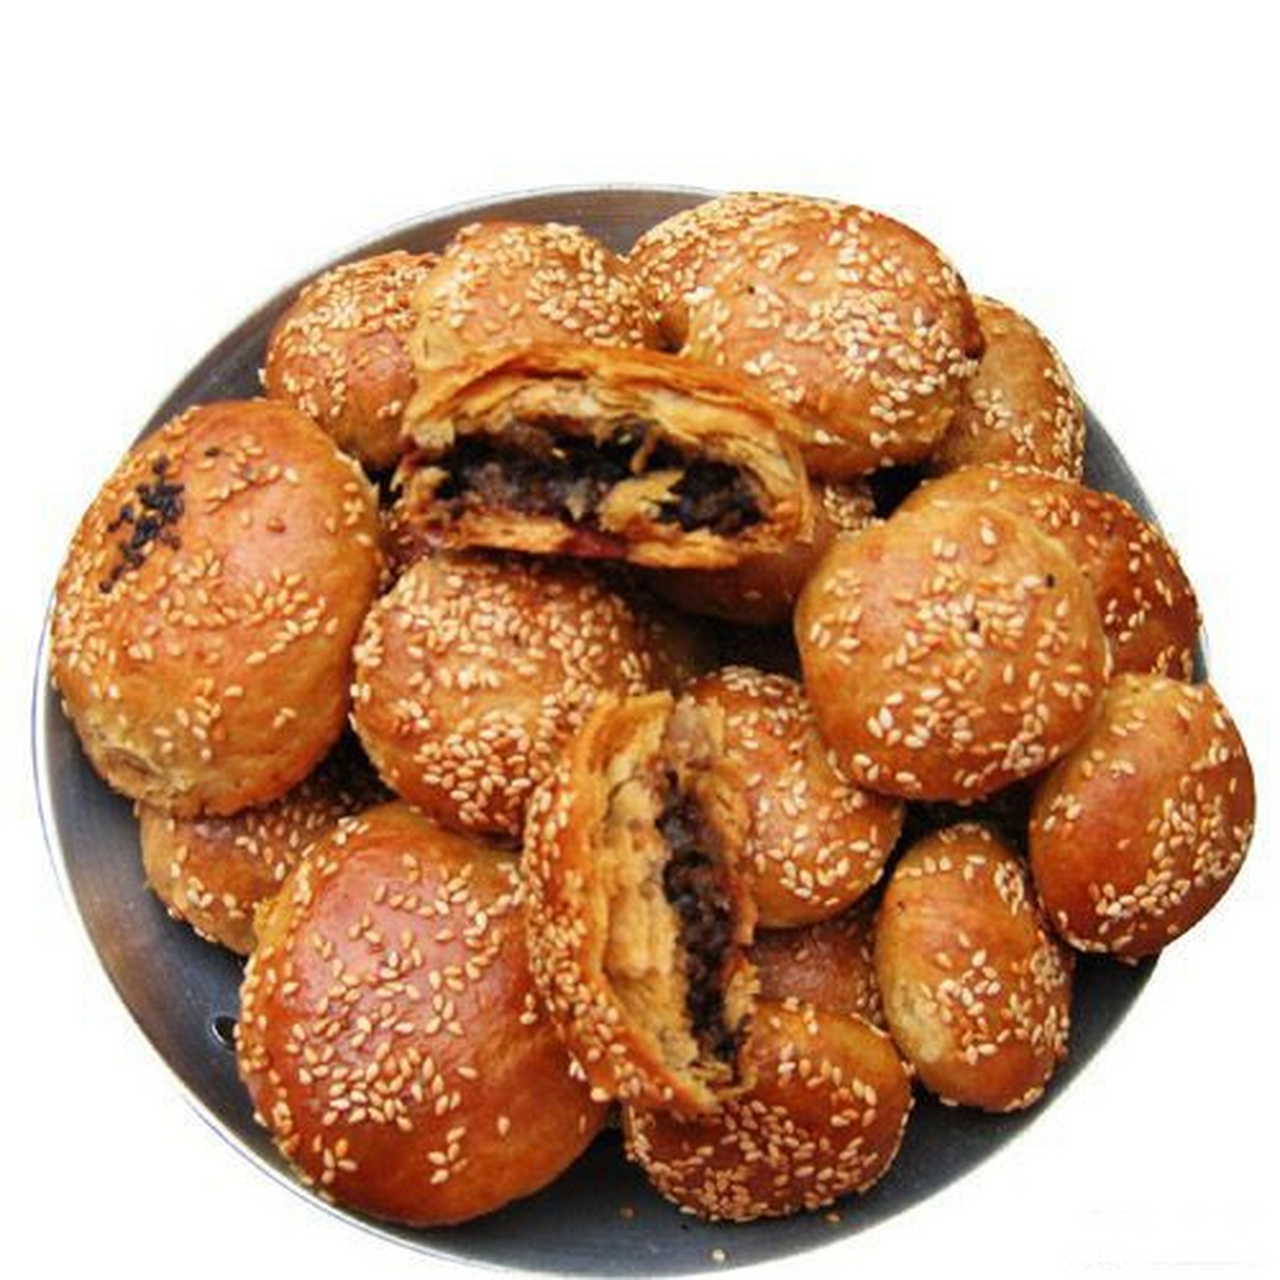 建德烧饼原名严州干菜烧饼,又名严州酥饼,建德干菜烧饼,是建德传统的